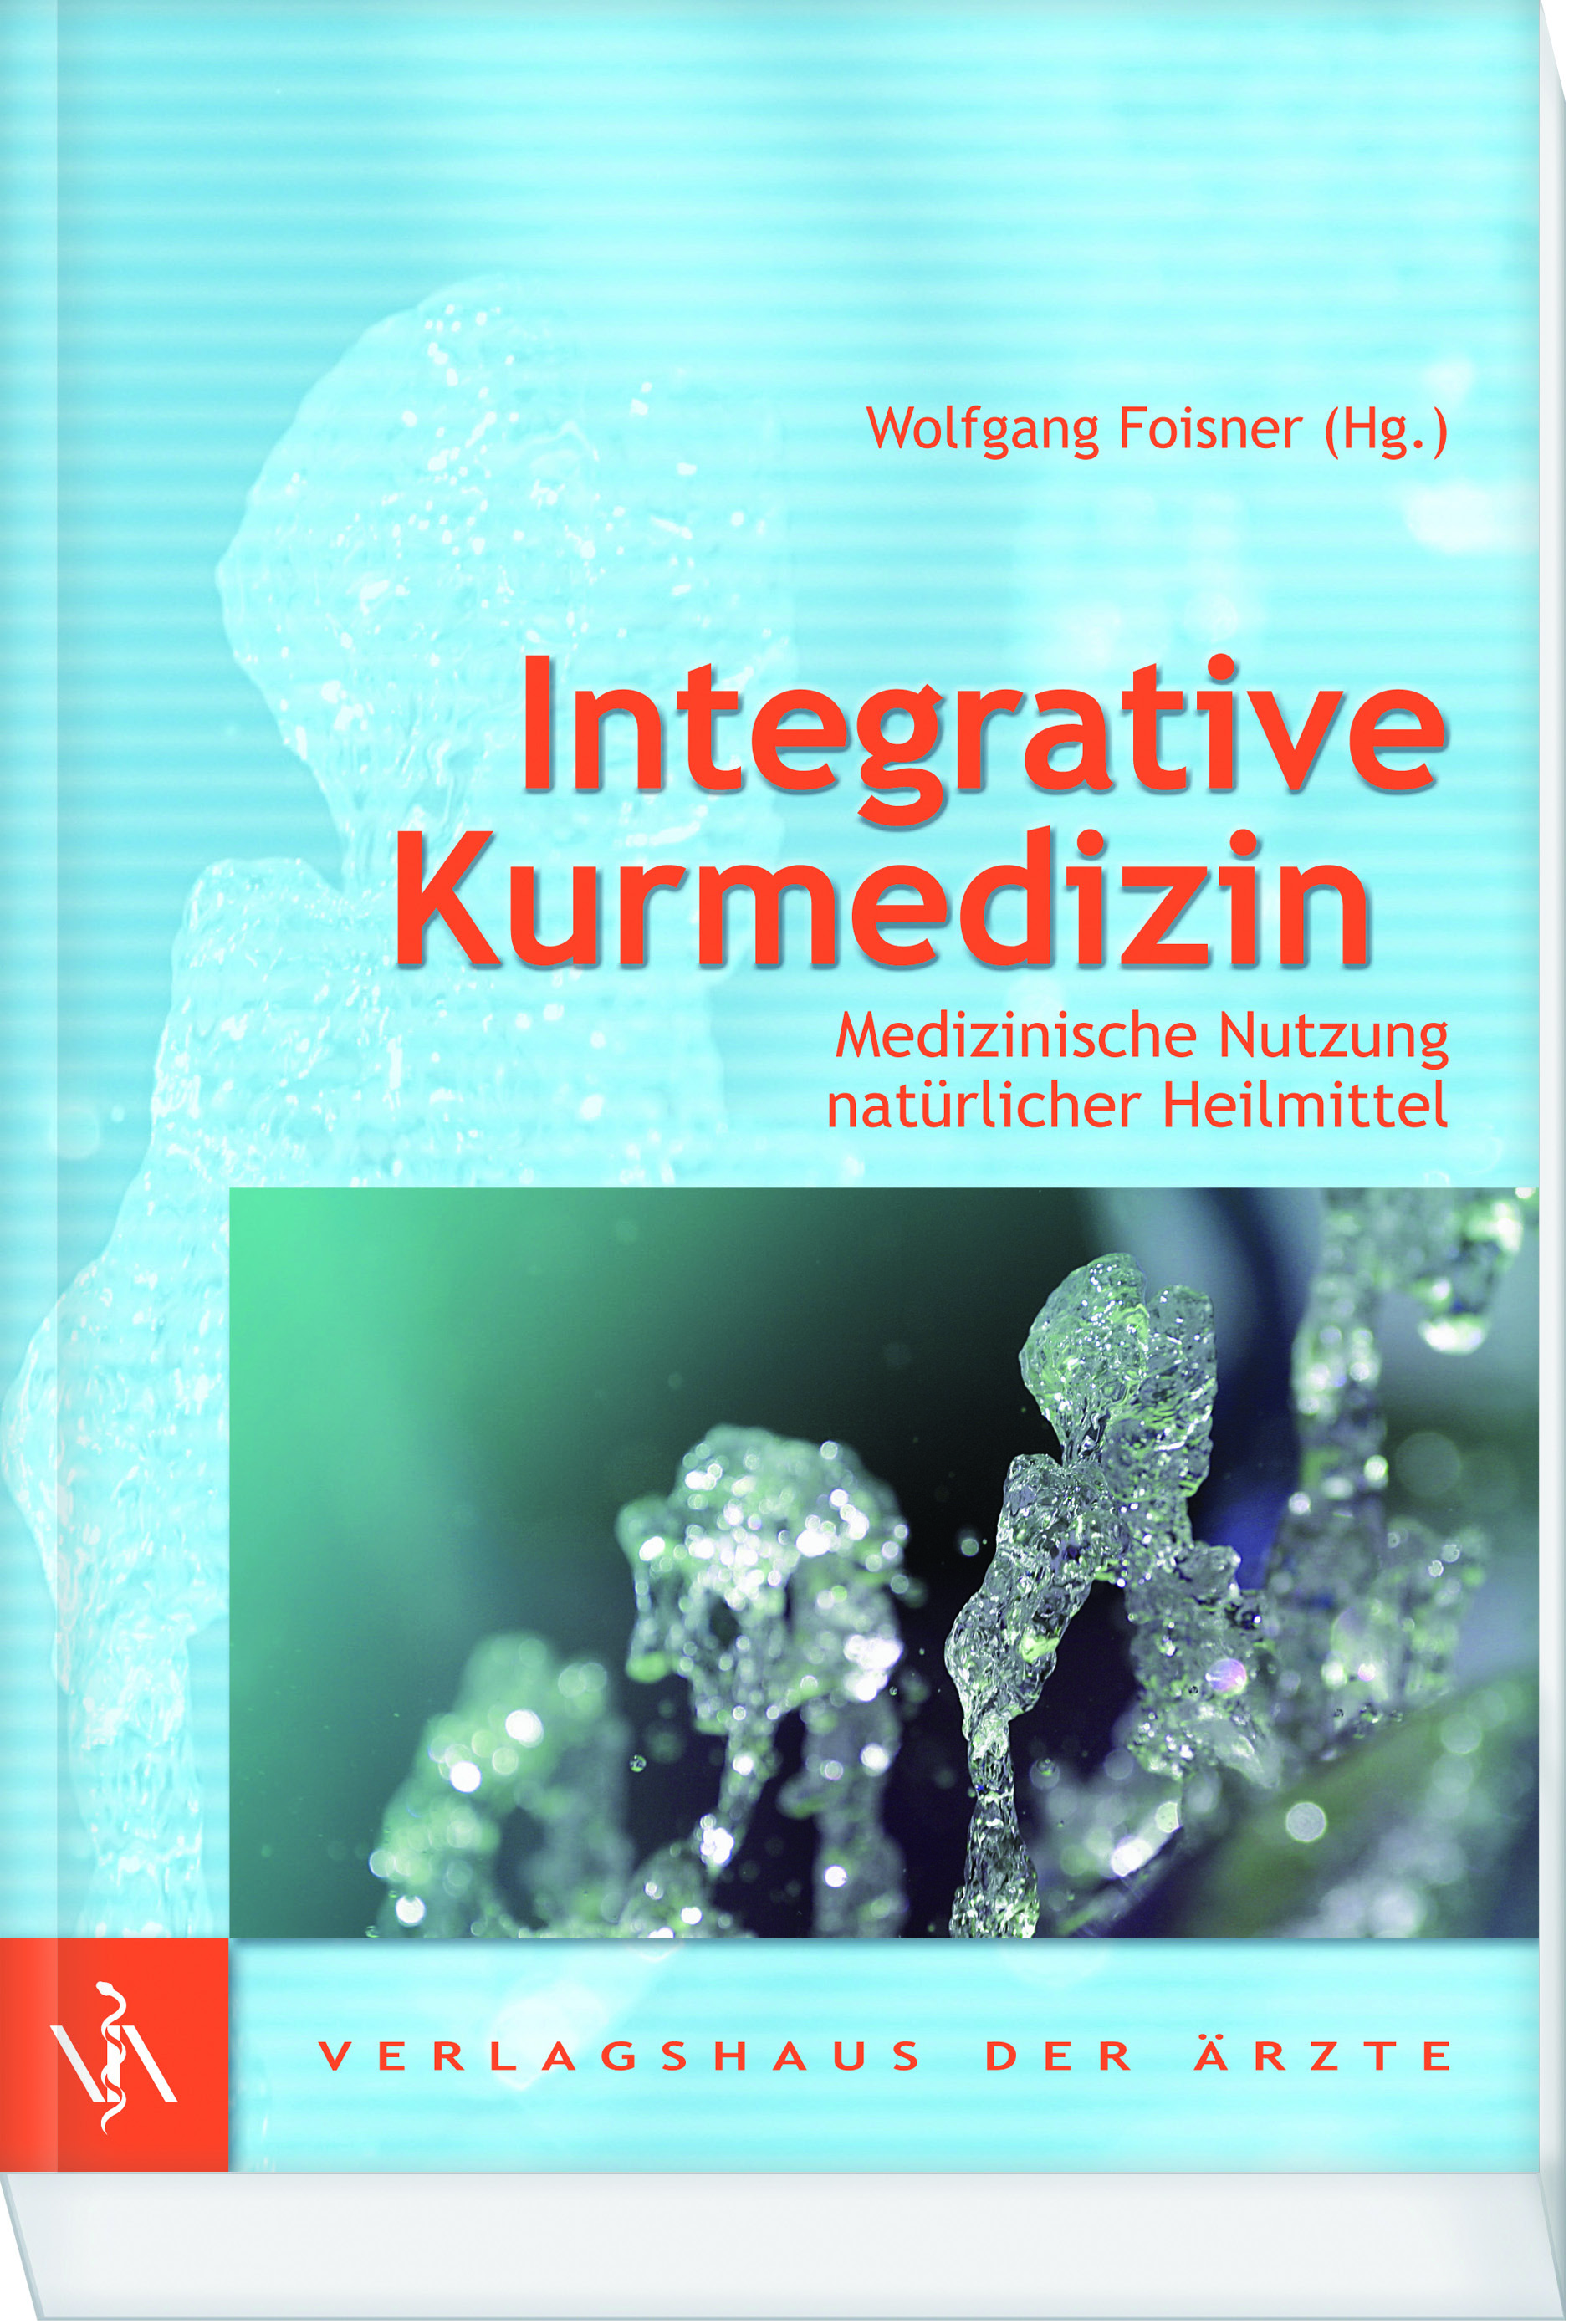 ) Integrative Kurmedizin Medizinische Nutzung natürlicher Heilmittel Bitte Coupon vollständig ausfüllen: Wolfgang Foisner (Hg.